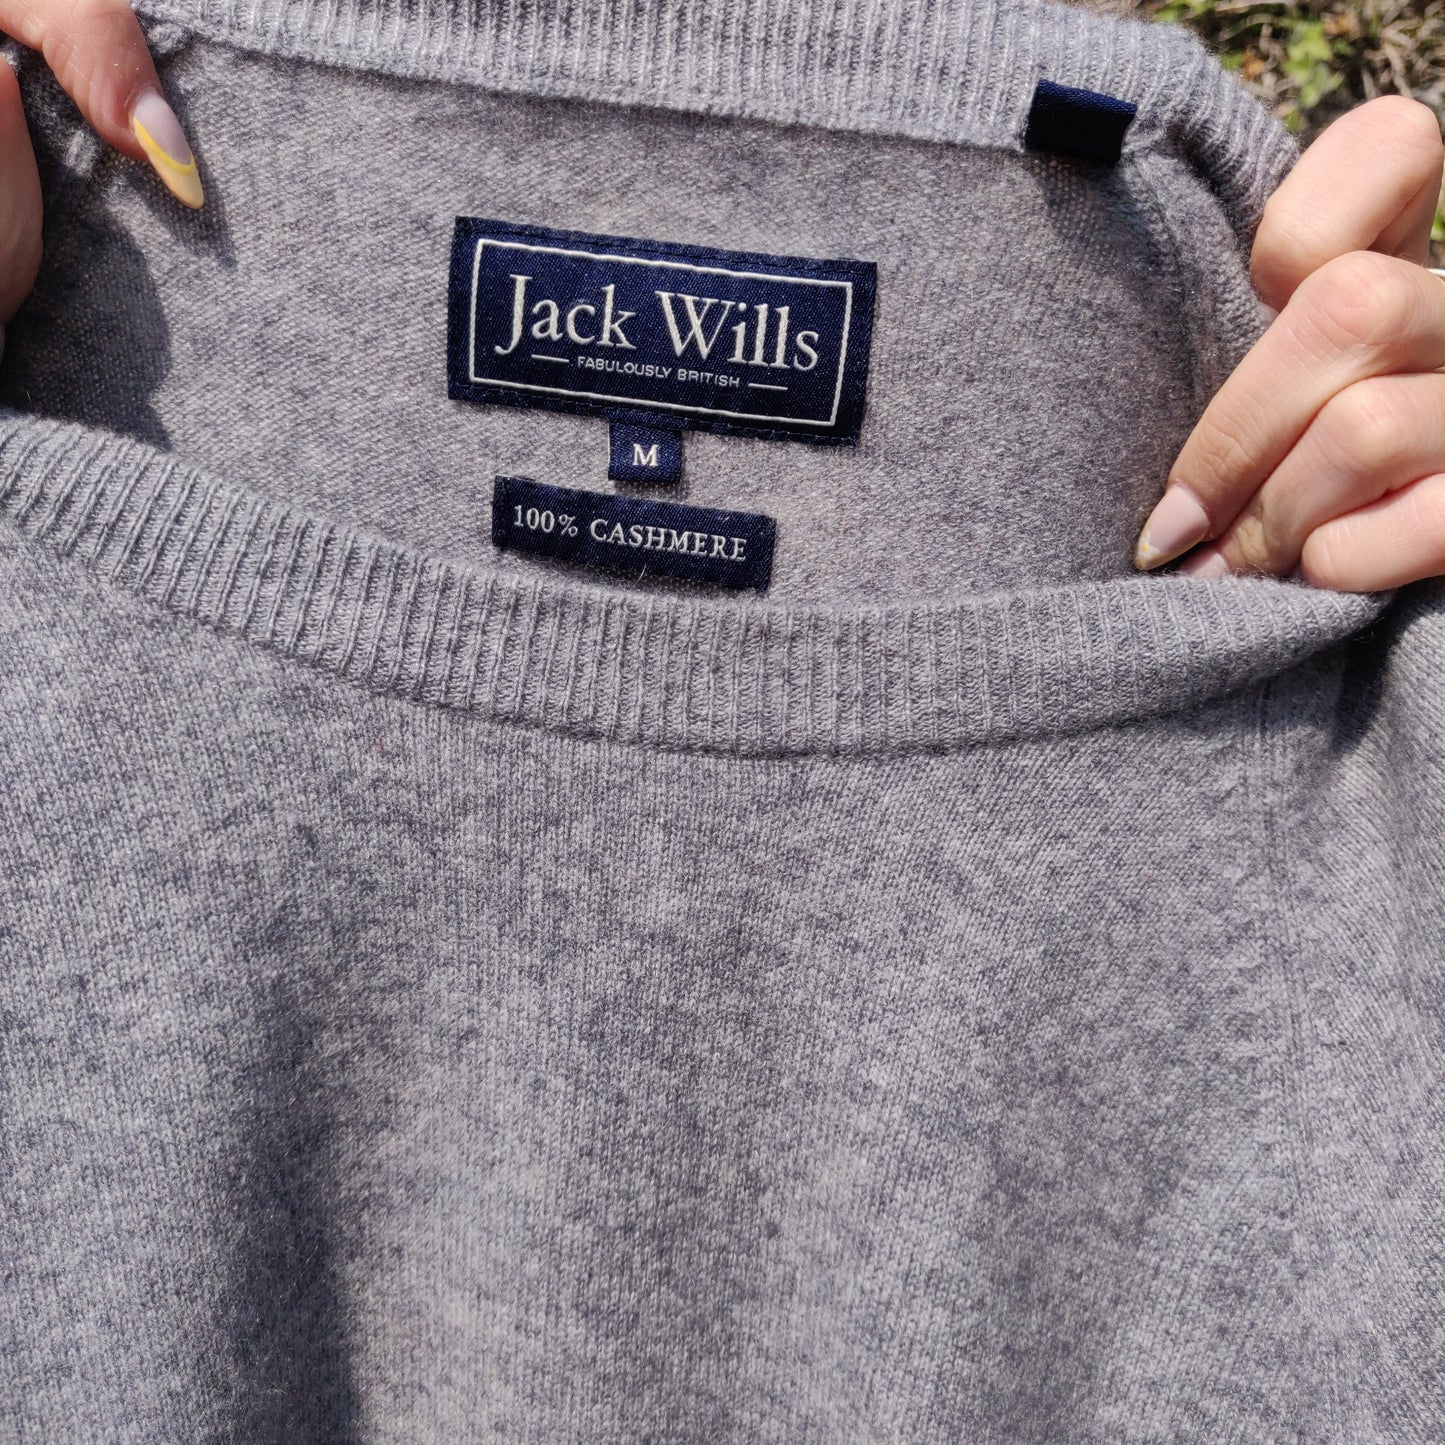 Jack Wills Grey 100% Cashmere Crew Neck Pullover Jumper Sweater Men Size Medium